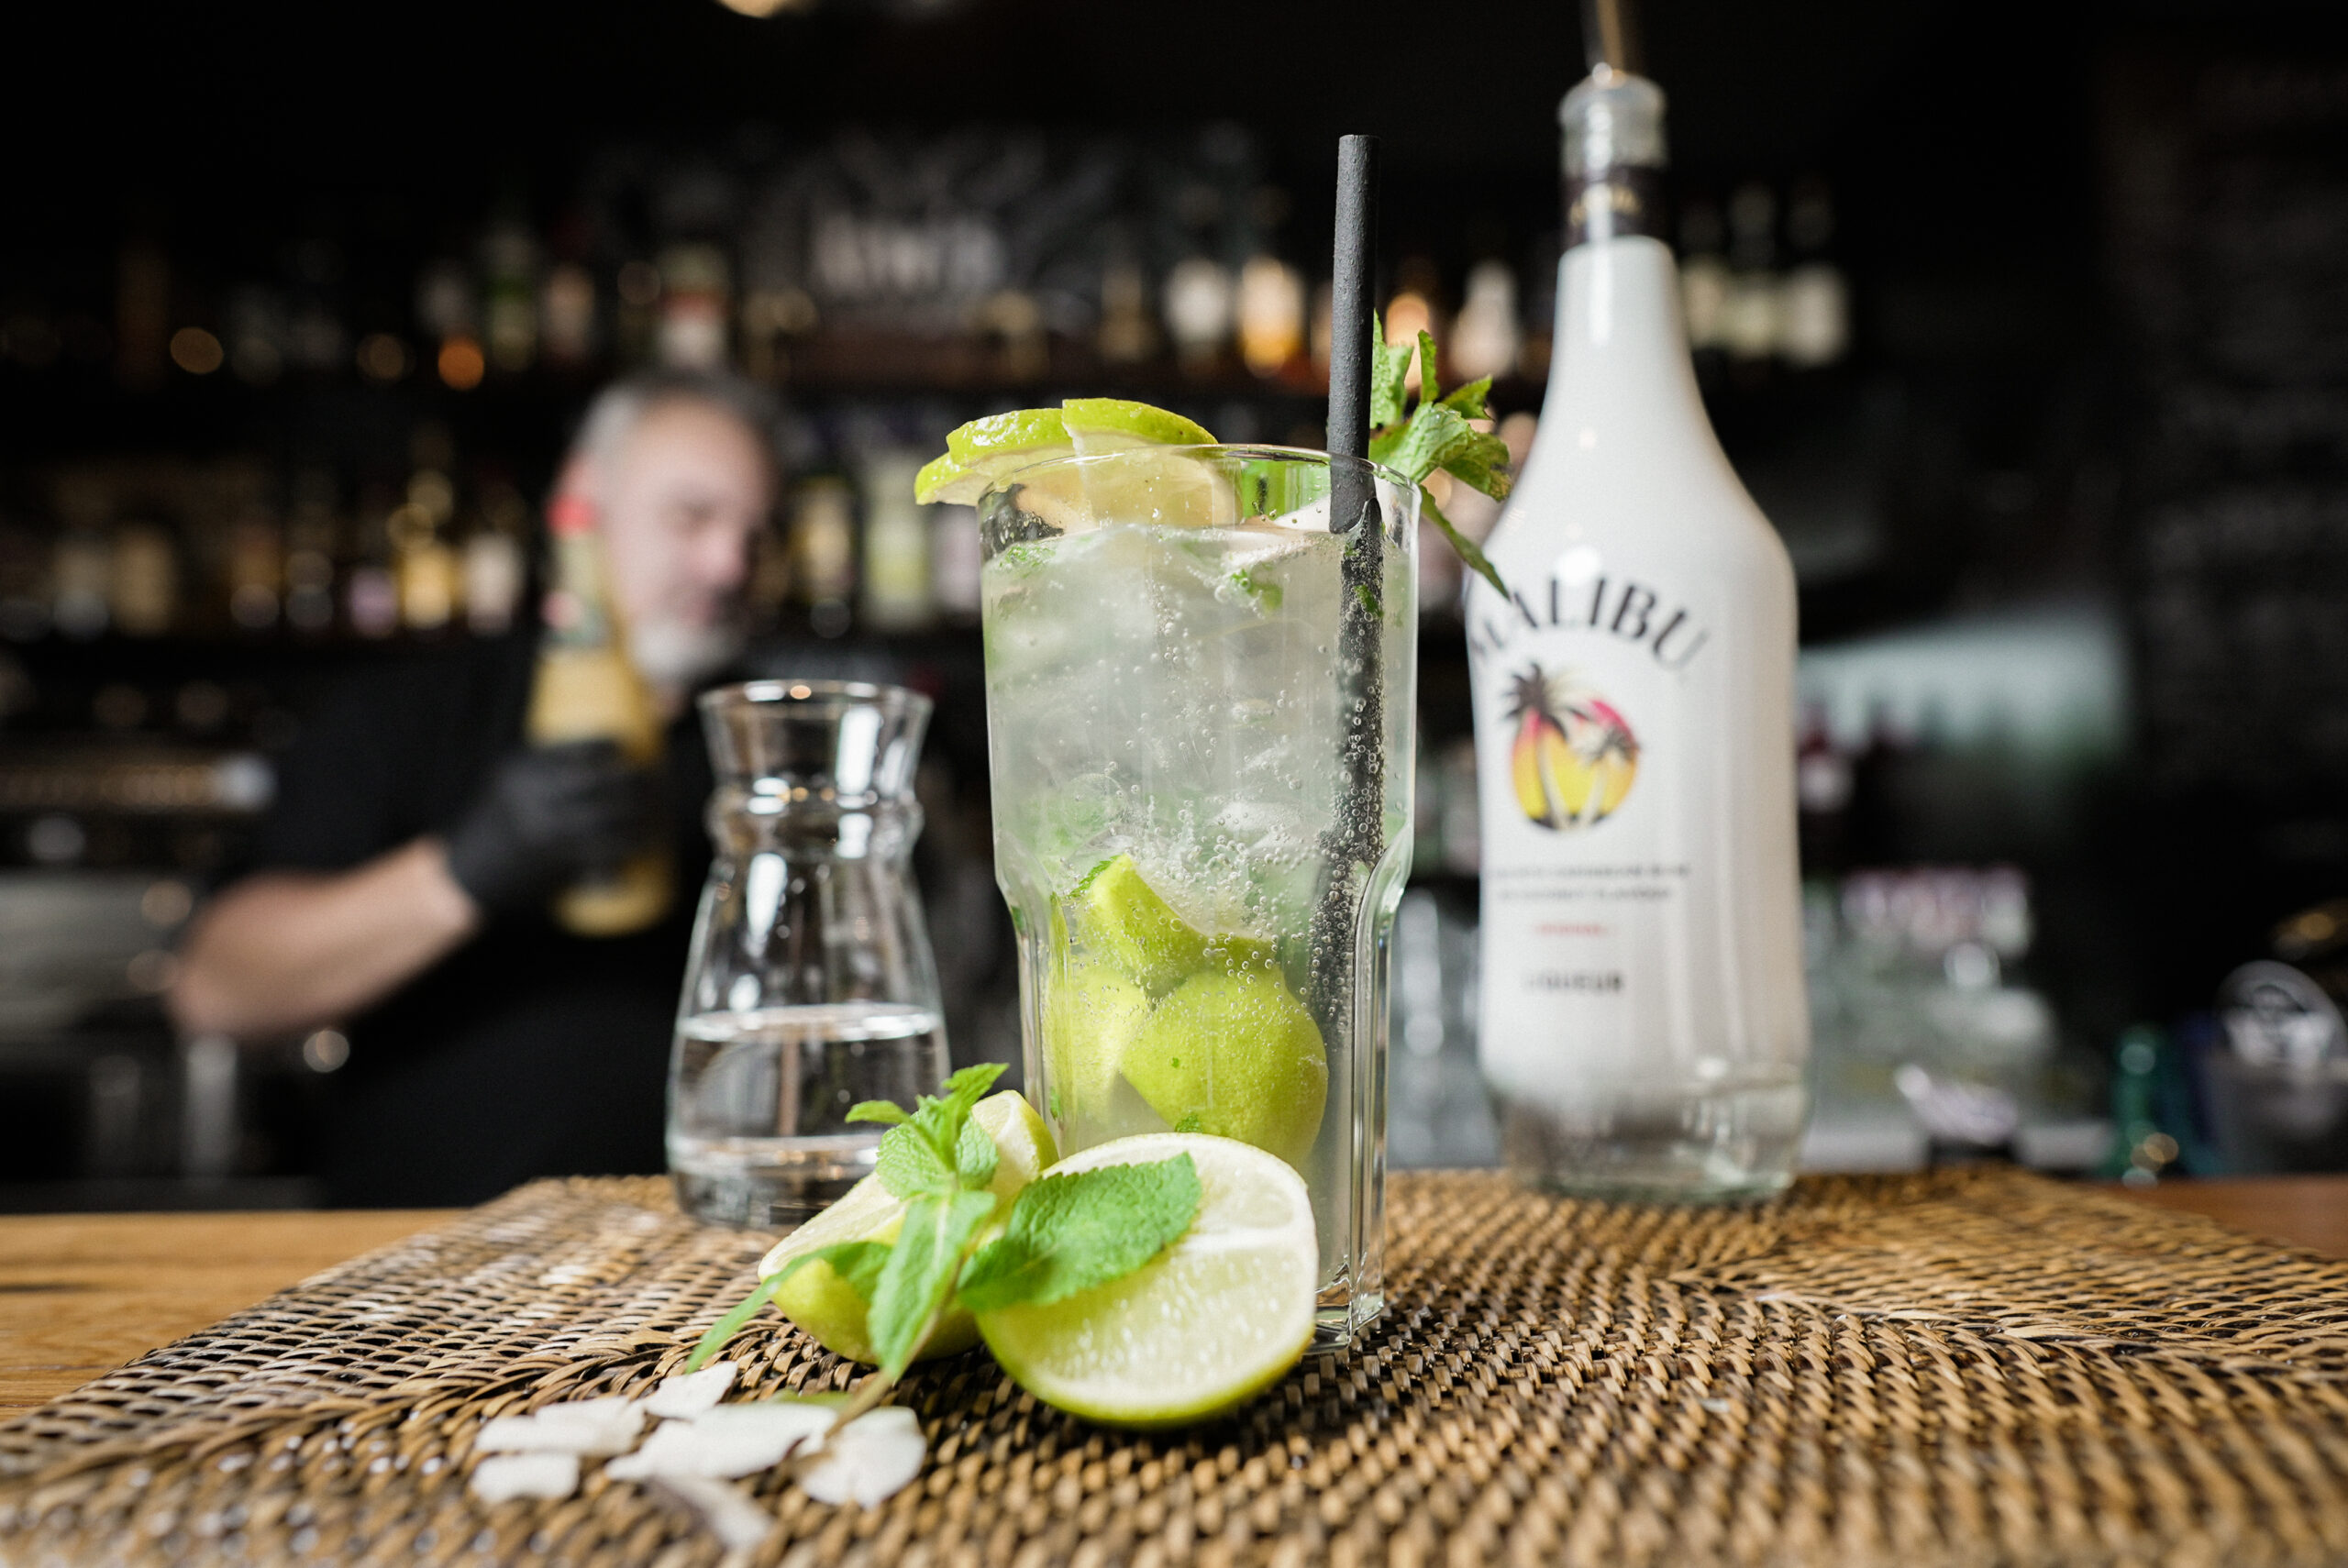 Cocktail angerichtet im großen Glas mit Limetten und Mize, im Hintergrund eine Bar mit Malibu und Barkeeper